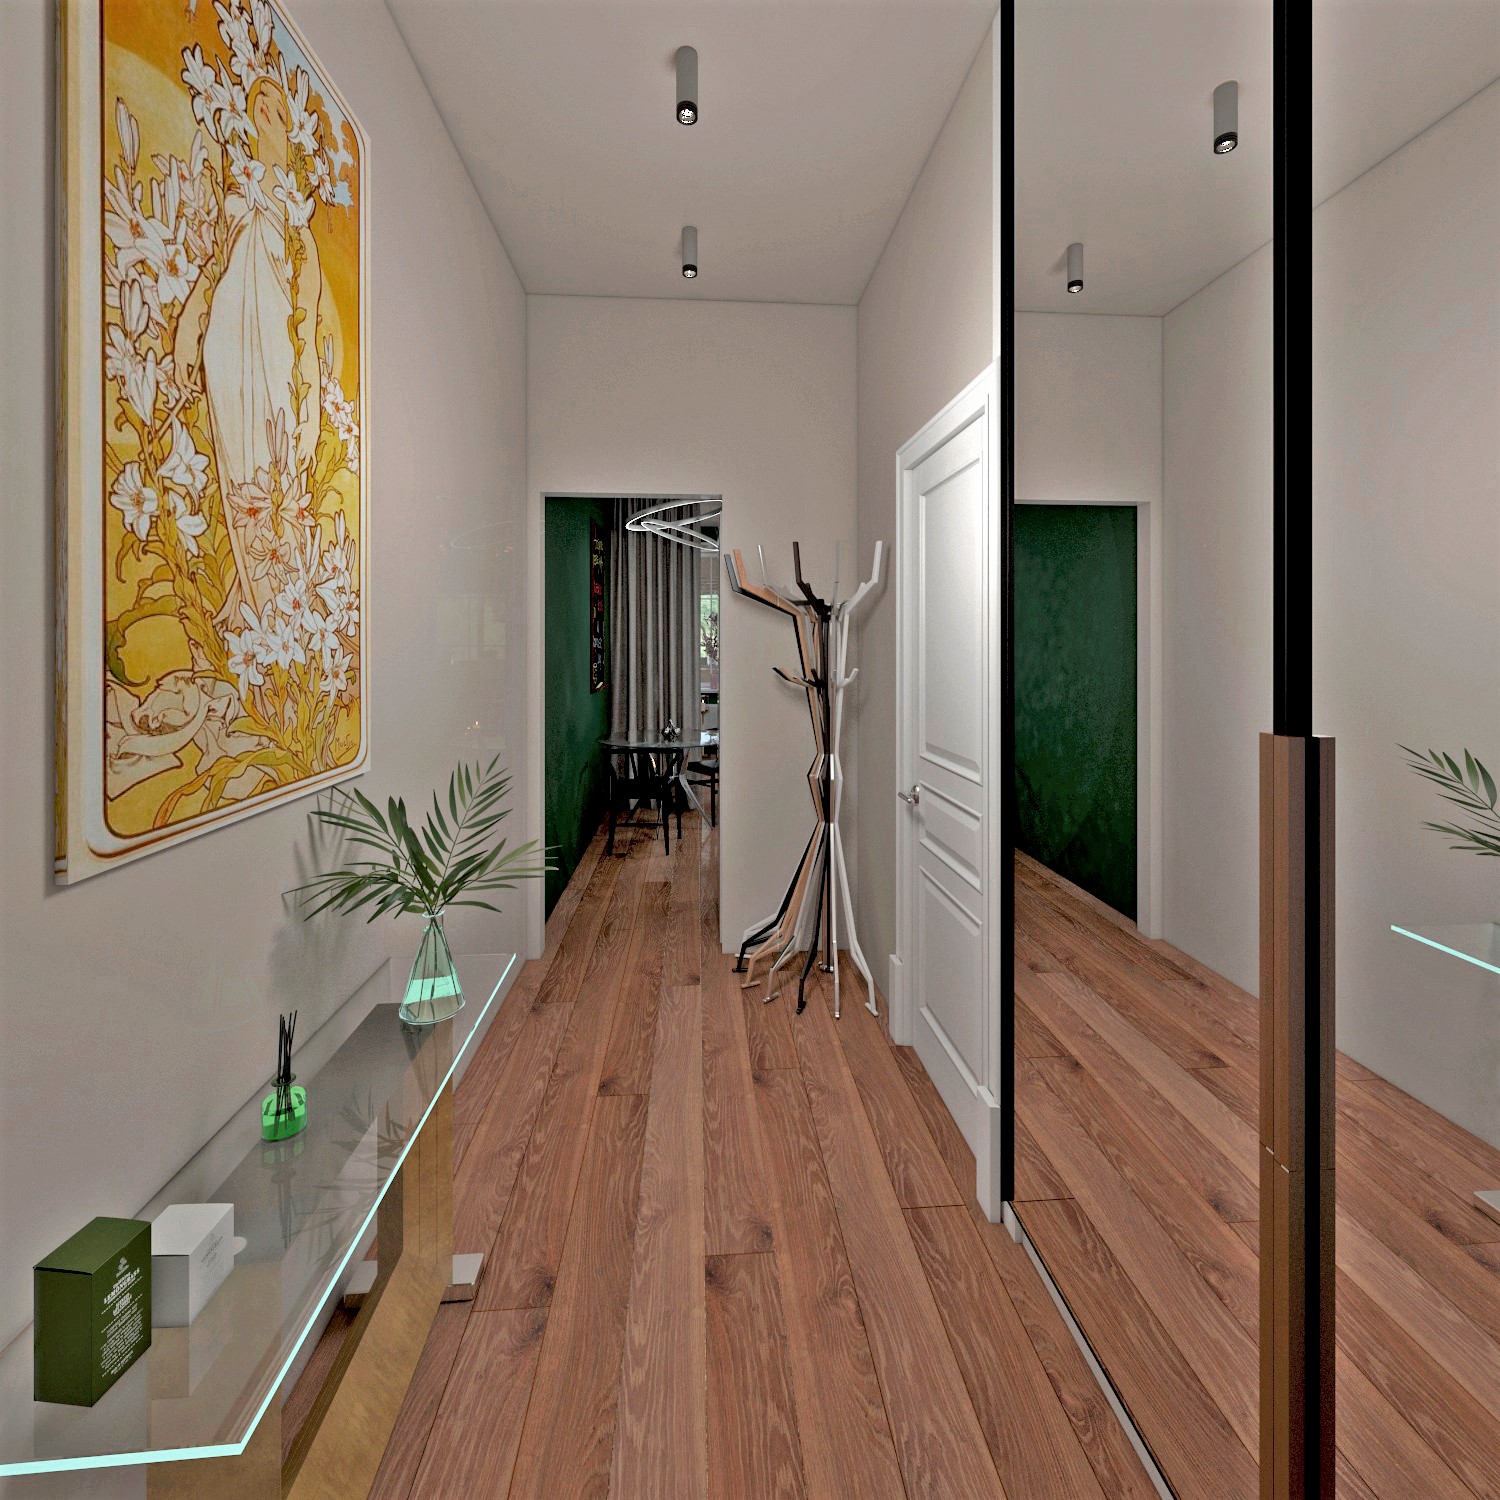 Studio apartment in 3d max vray 3.0 image